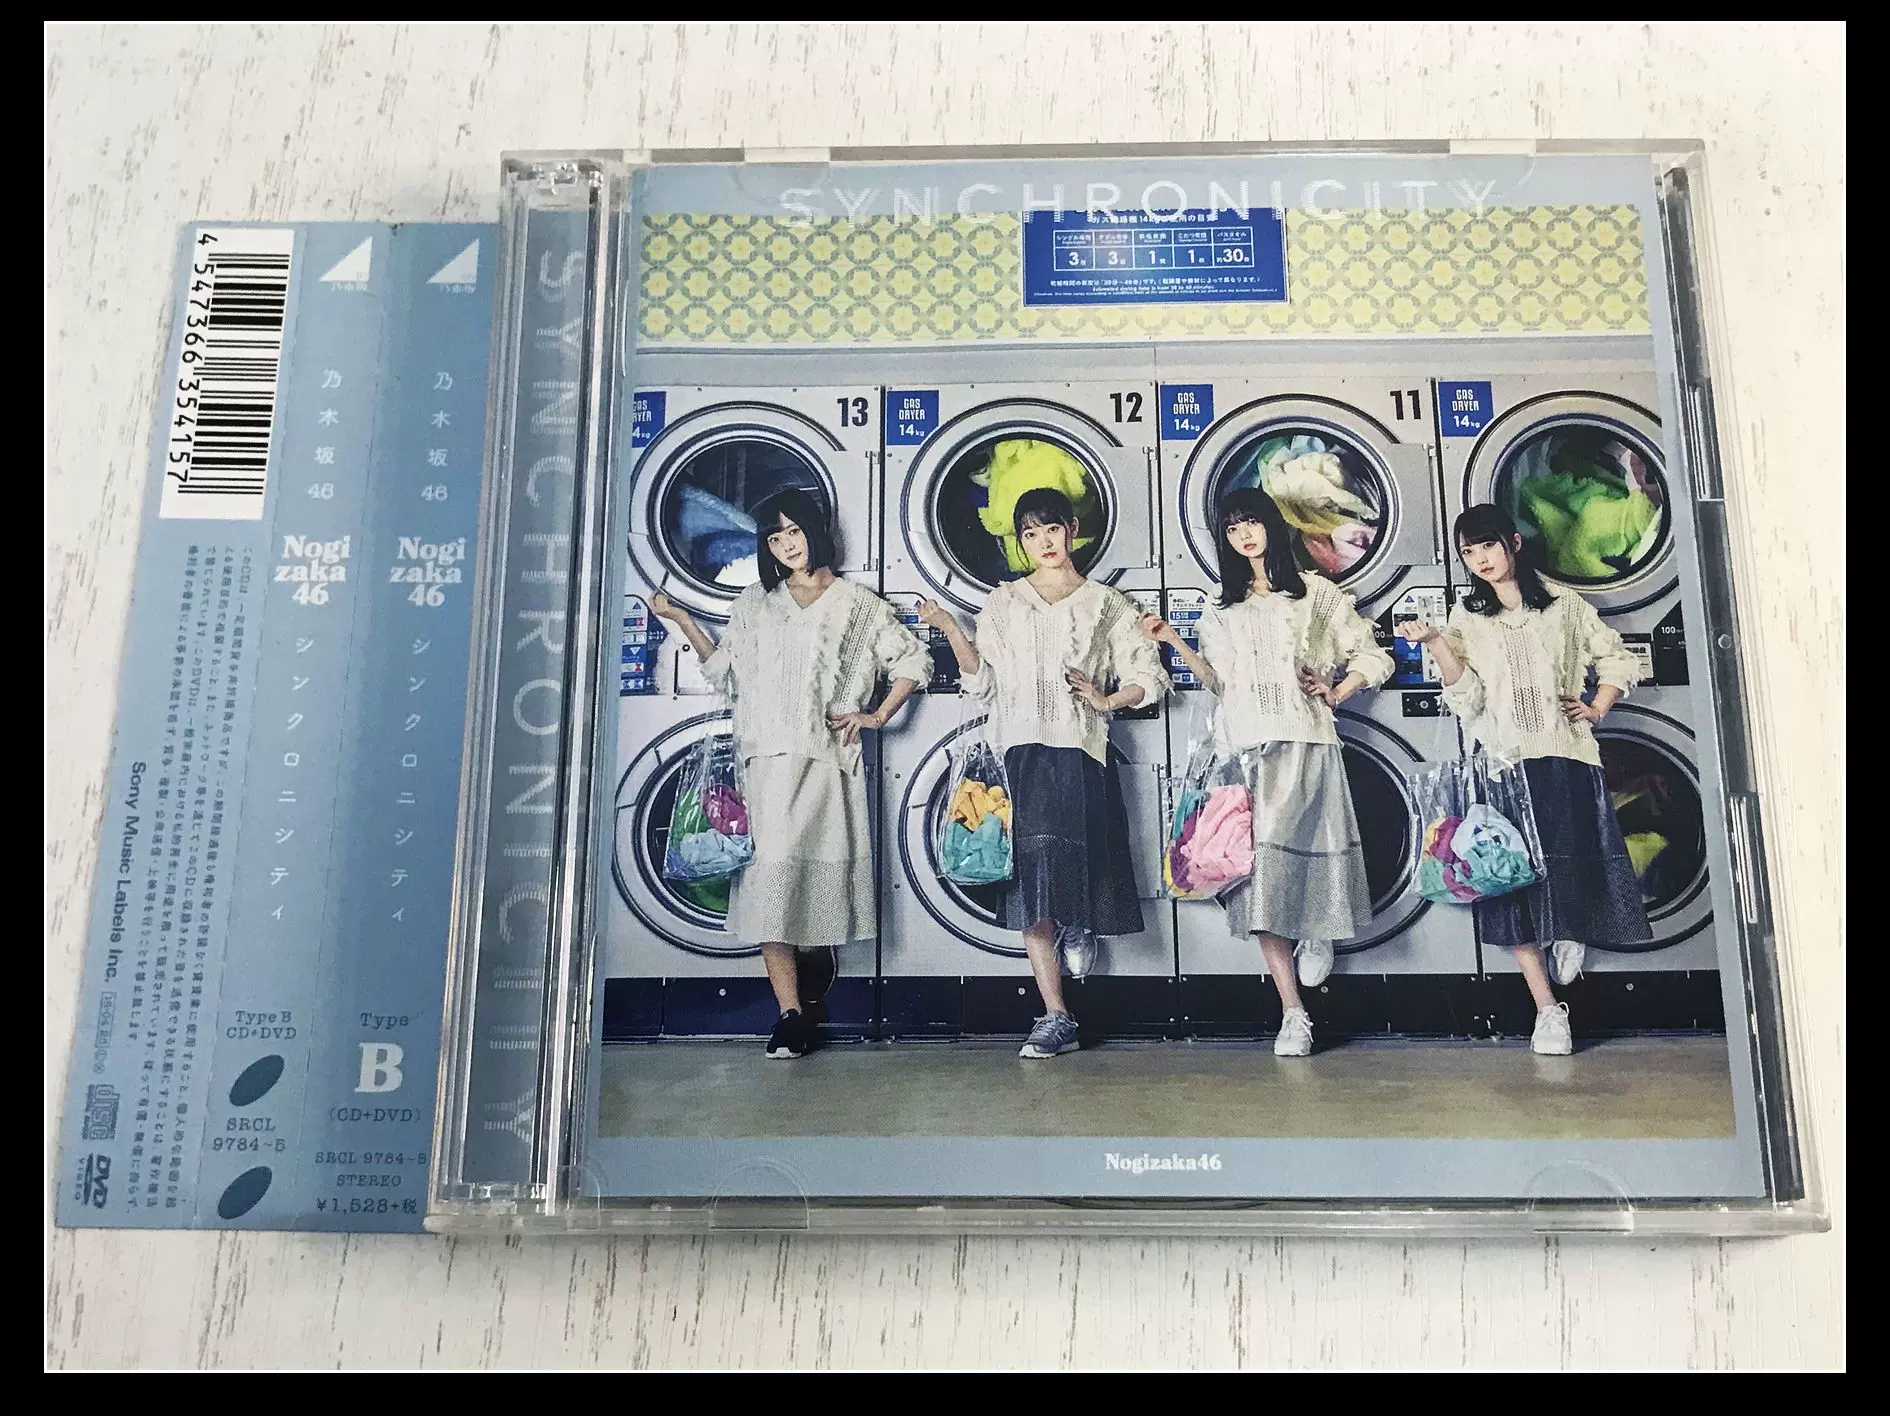 日】拆封CD 乃木坂46 /シンクロニシティCD+DVD-Taobao